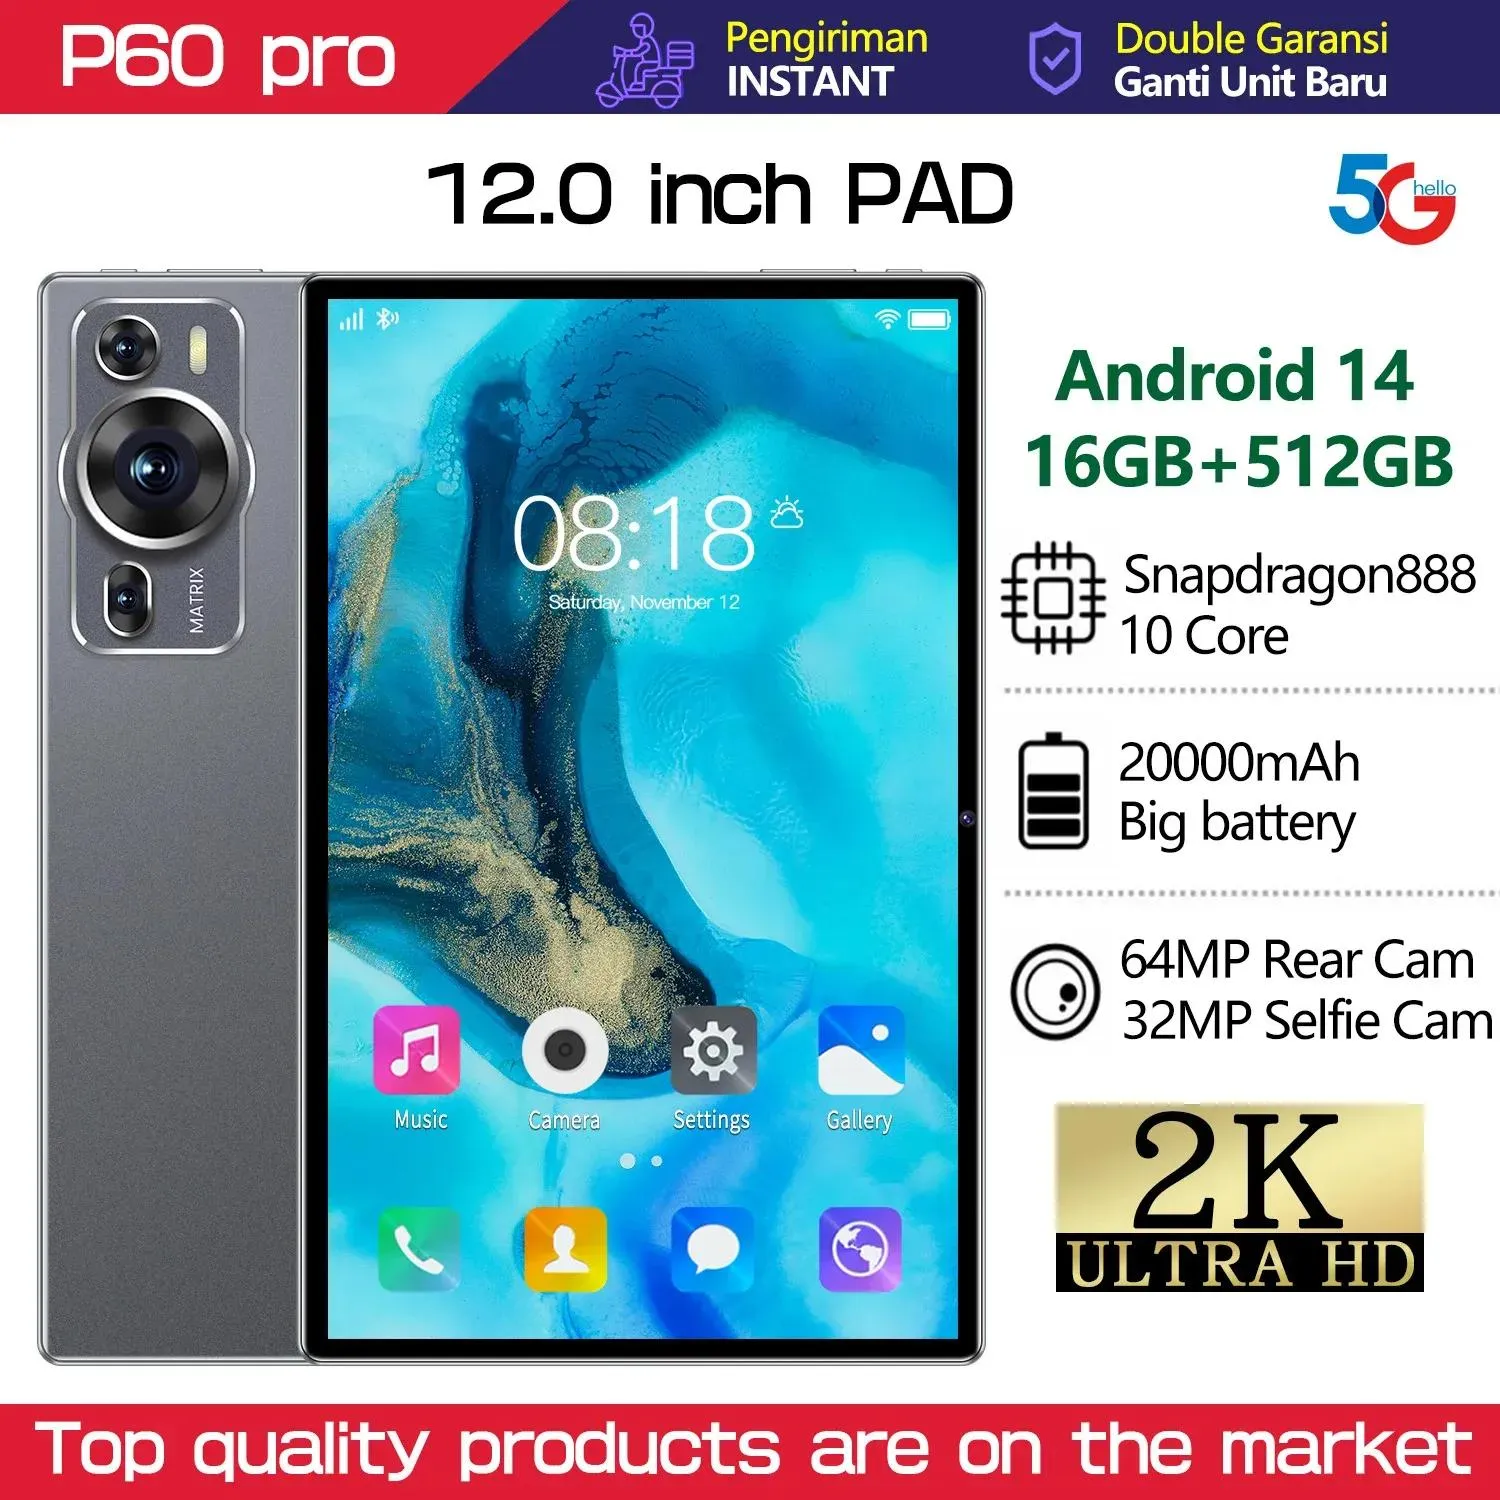 PCブランドタッチタブレットAndroid P60 Proグローバルタブレット12.0インチHD 16G+512GB Snapdragon 888 5GデュアルSIMカードまたはWiFi Google Play